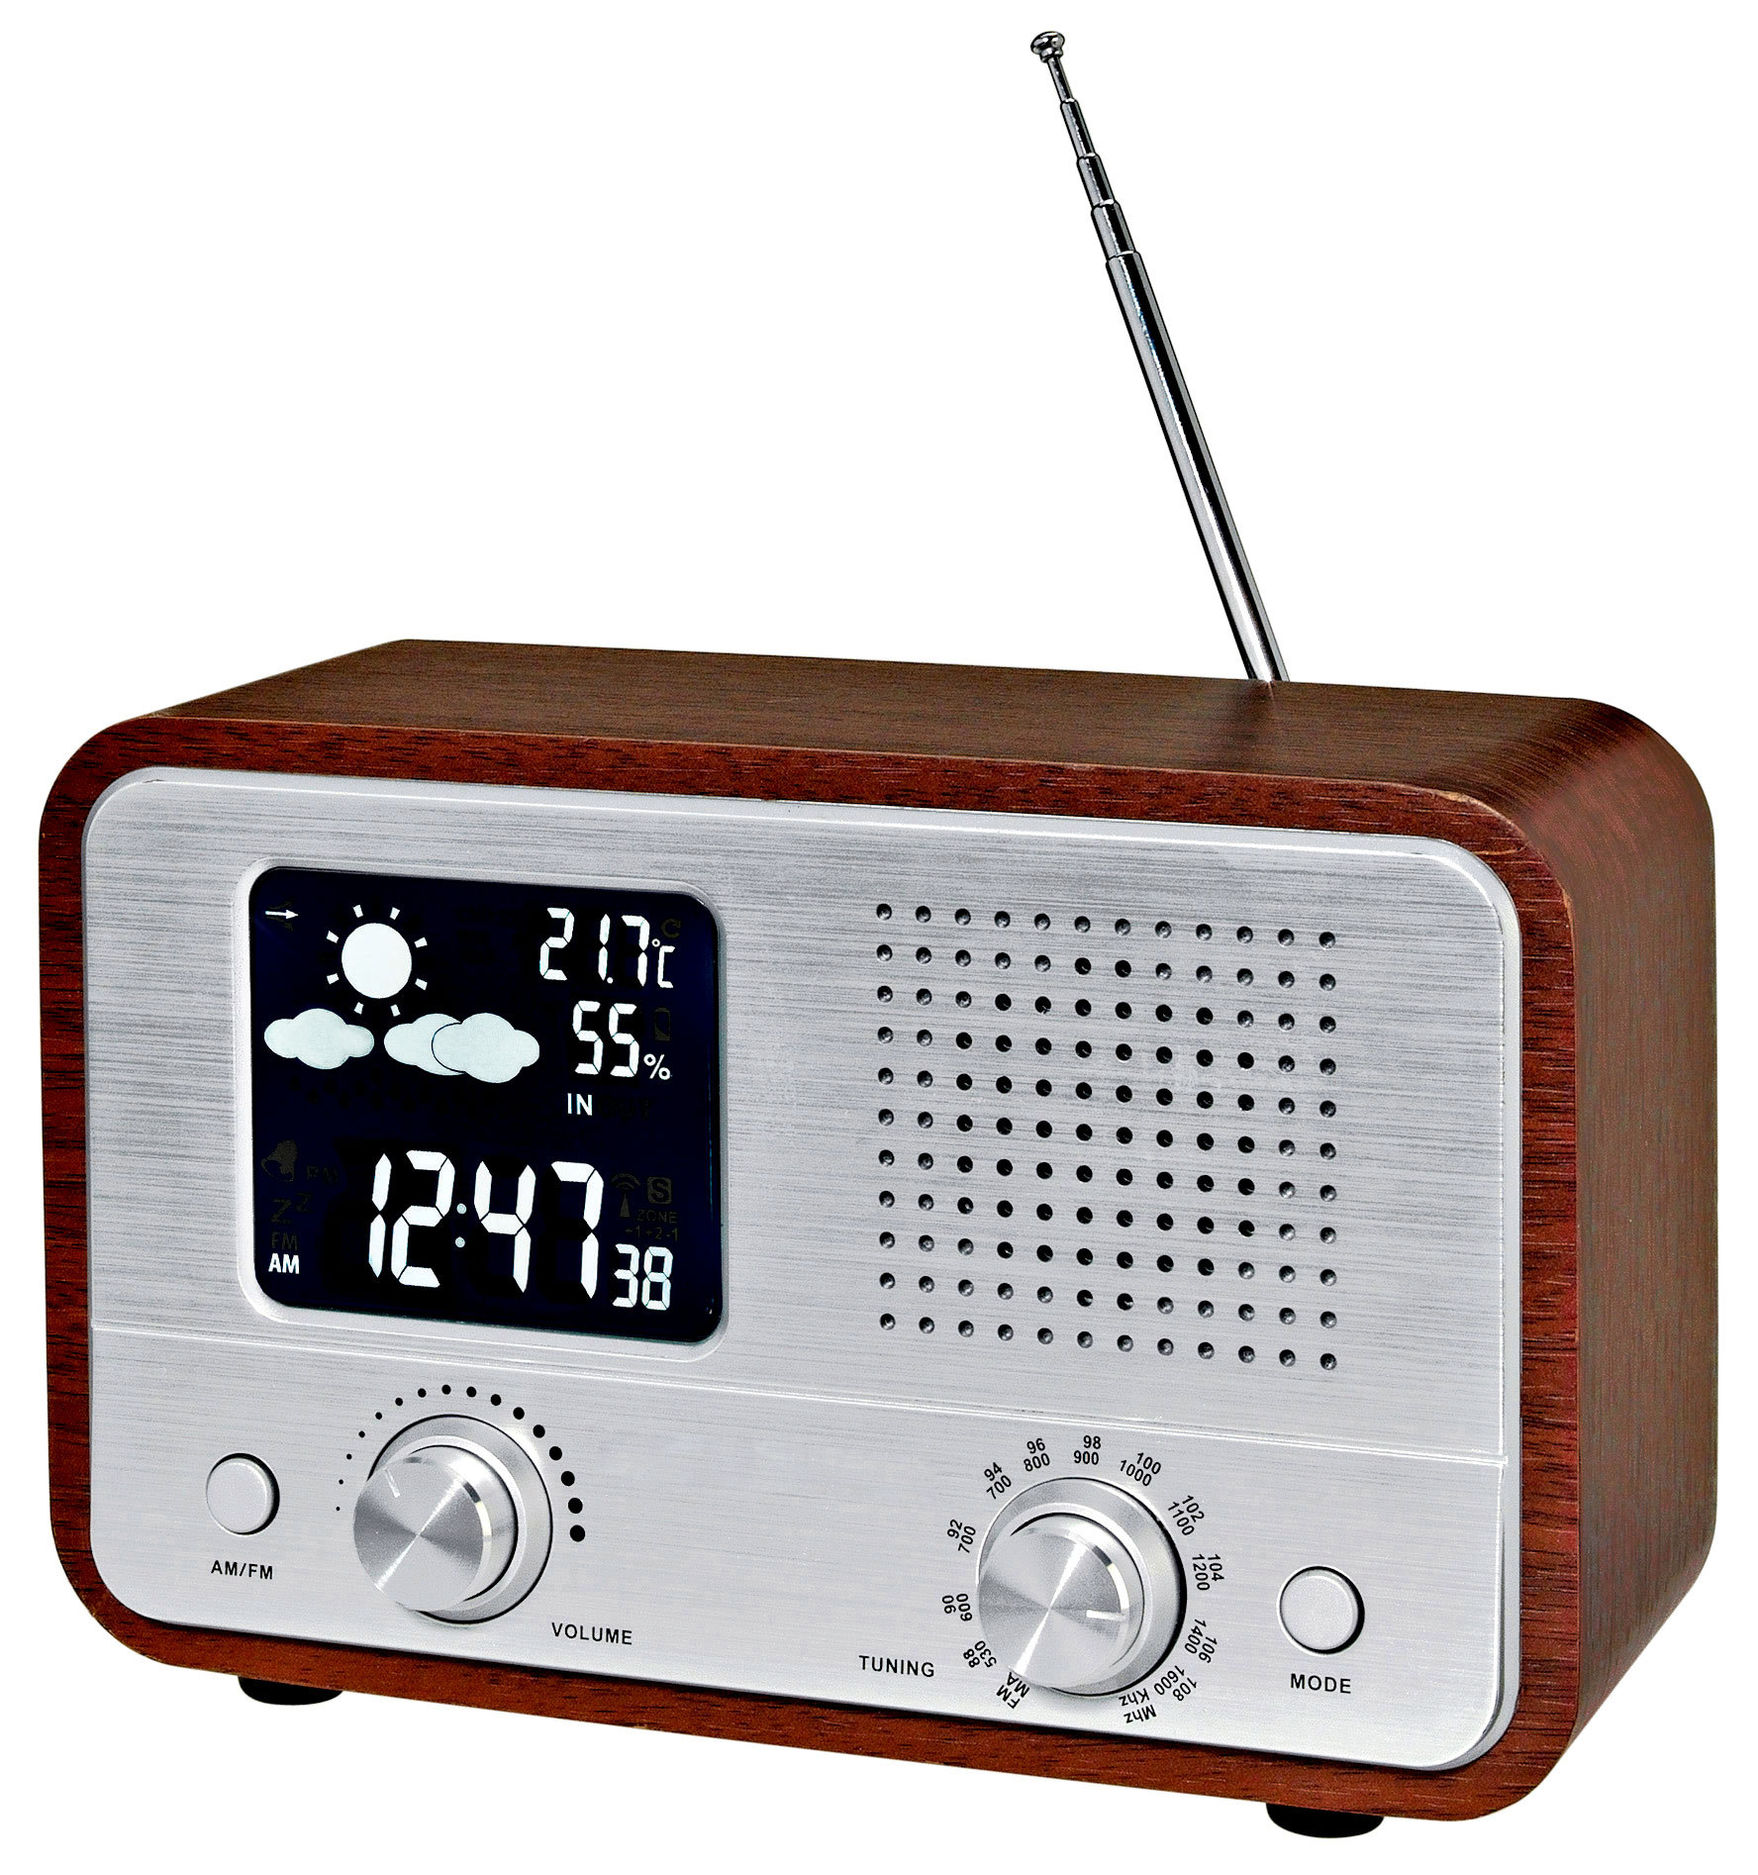 Nostalgie-Radio mit Wetterstation jetzt bei Weltbild.at bestellen